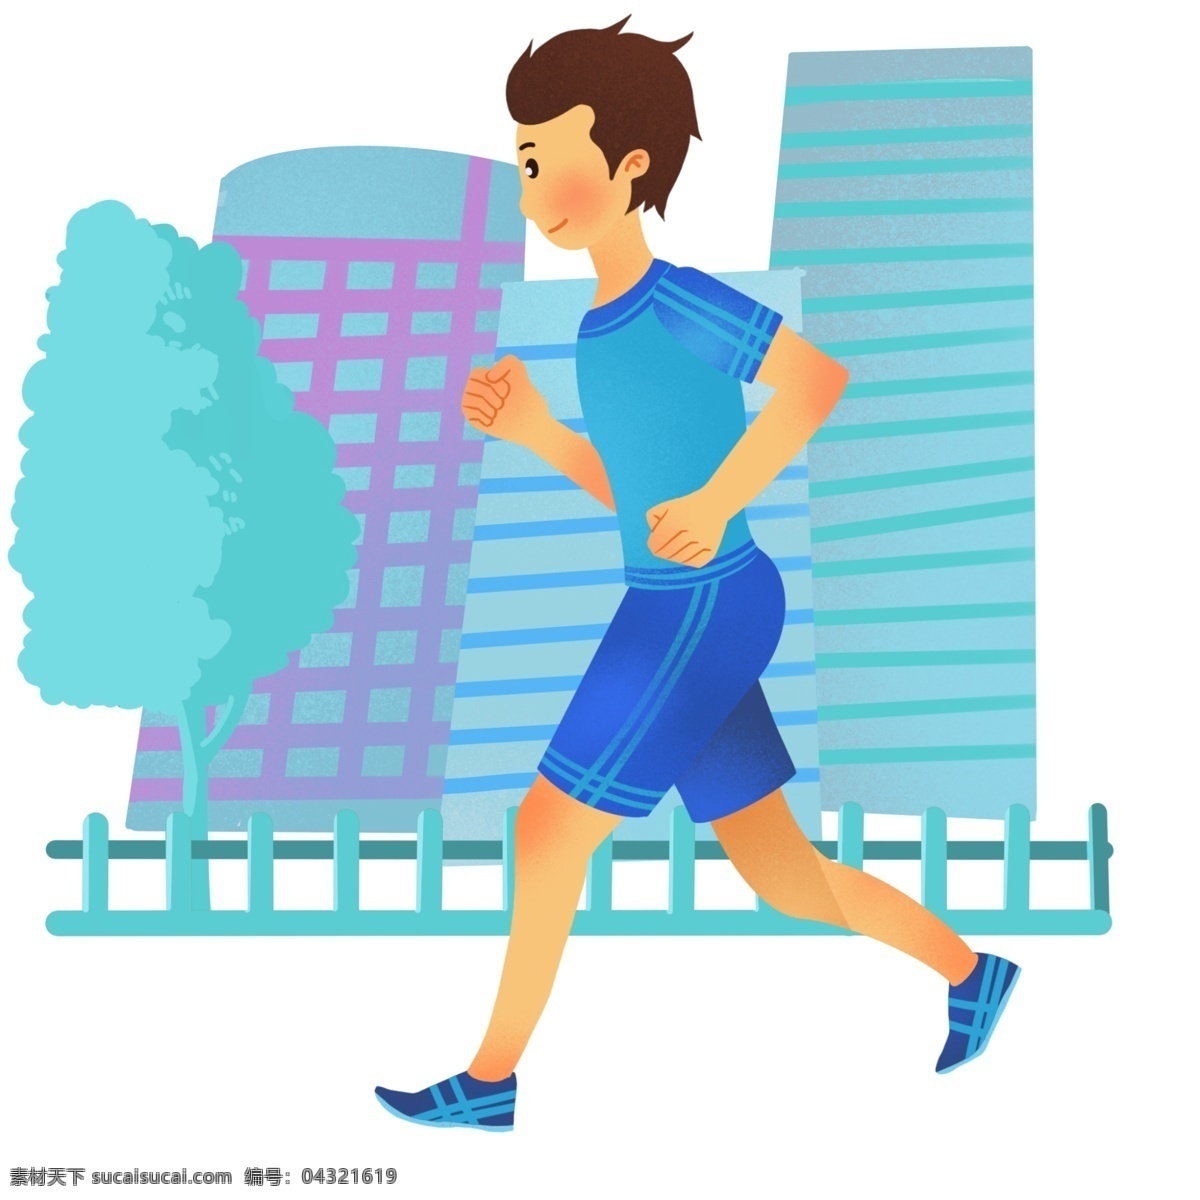 跑步 健身 运动 插画 跑步的男孩 卡通插画 健身运动 锻炼身体 体育运动 活动筋骨 跑步的运动